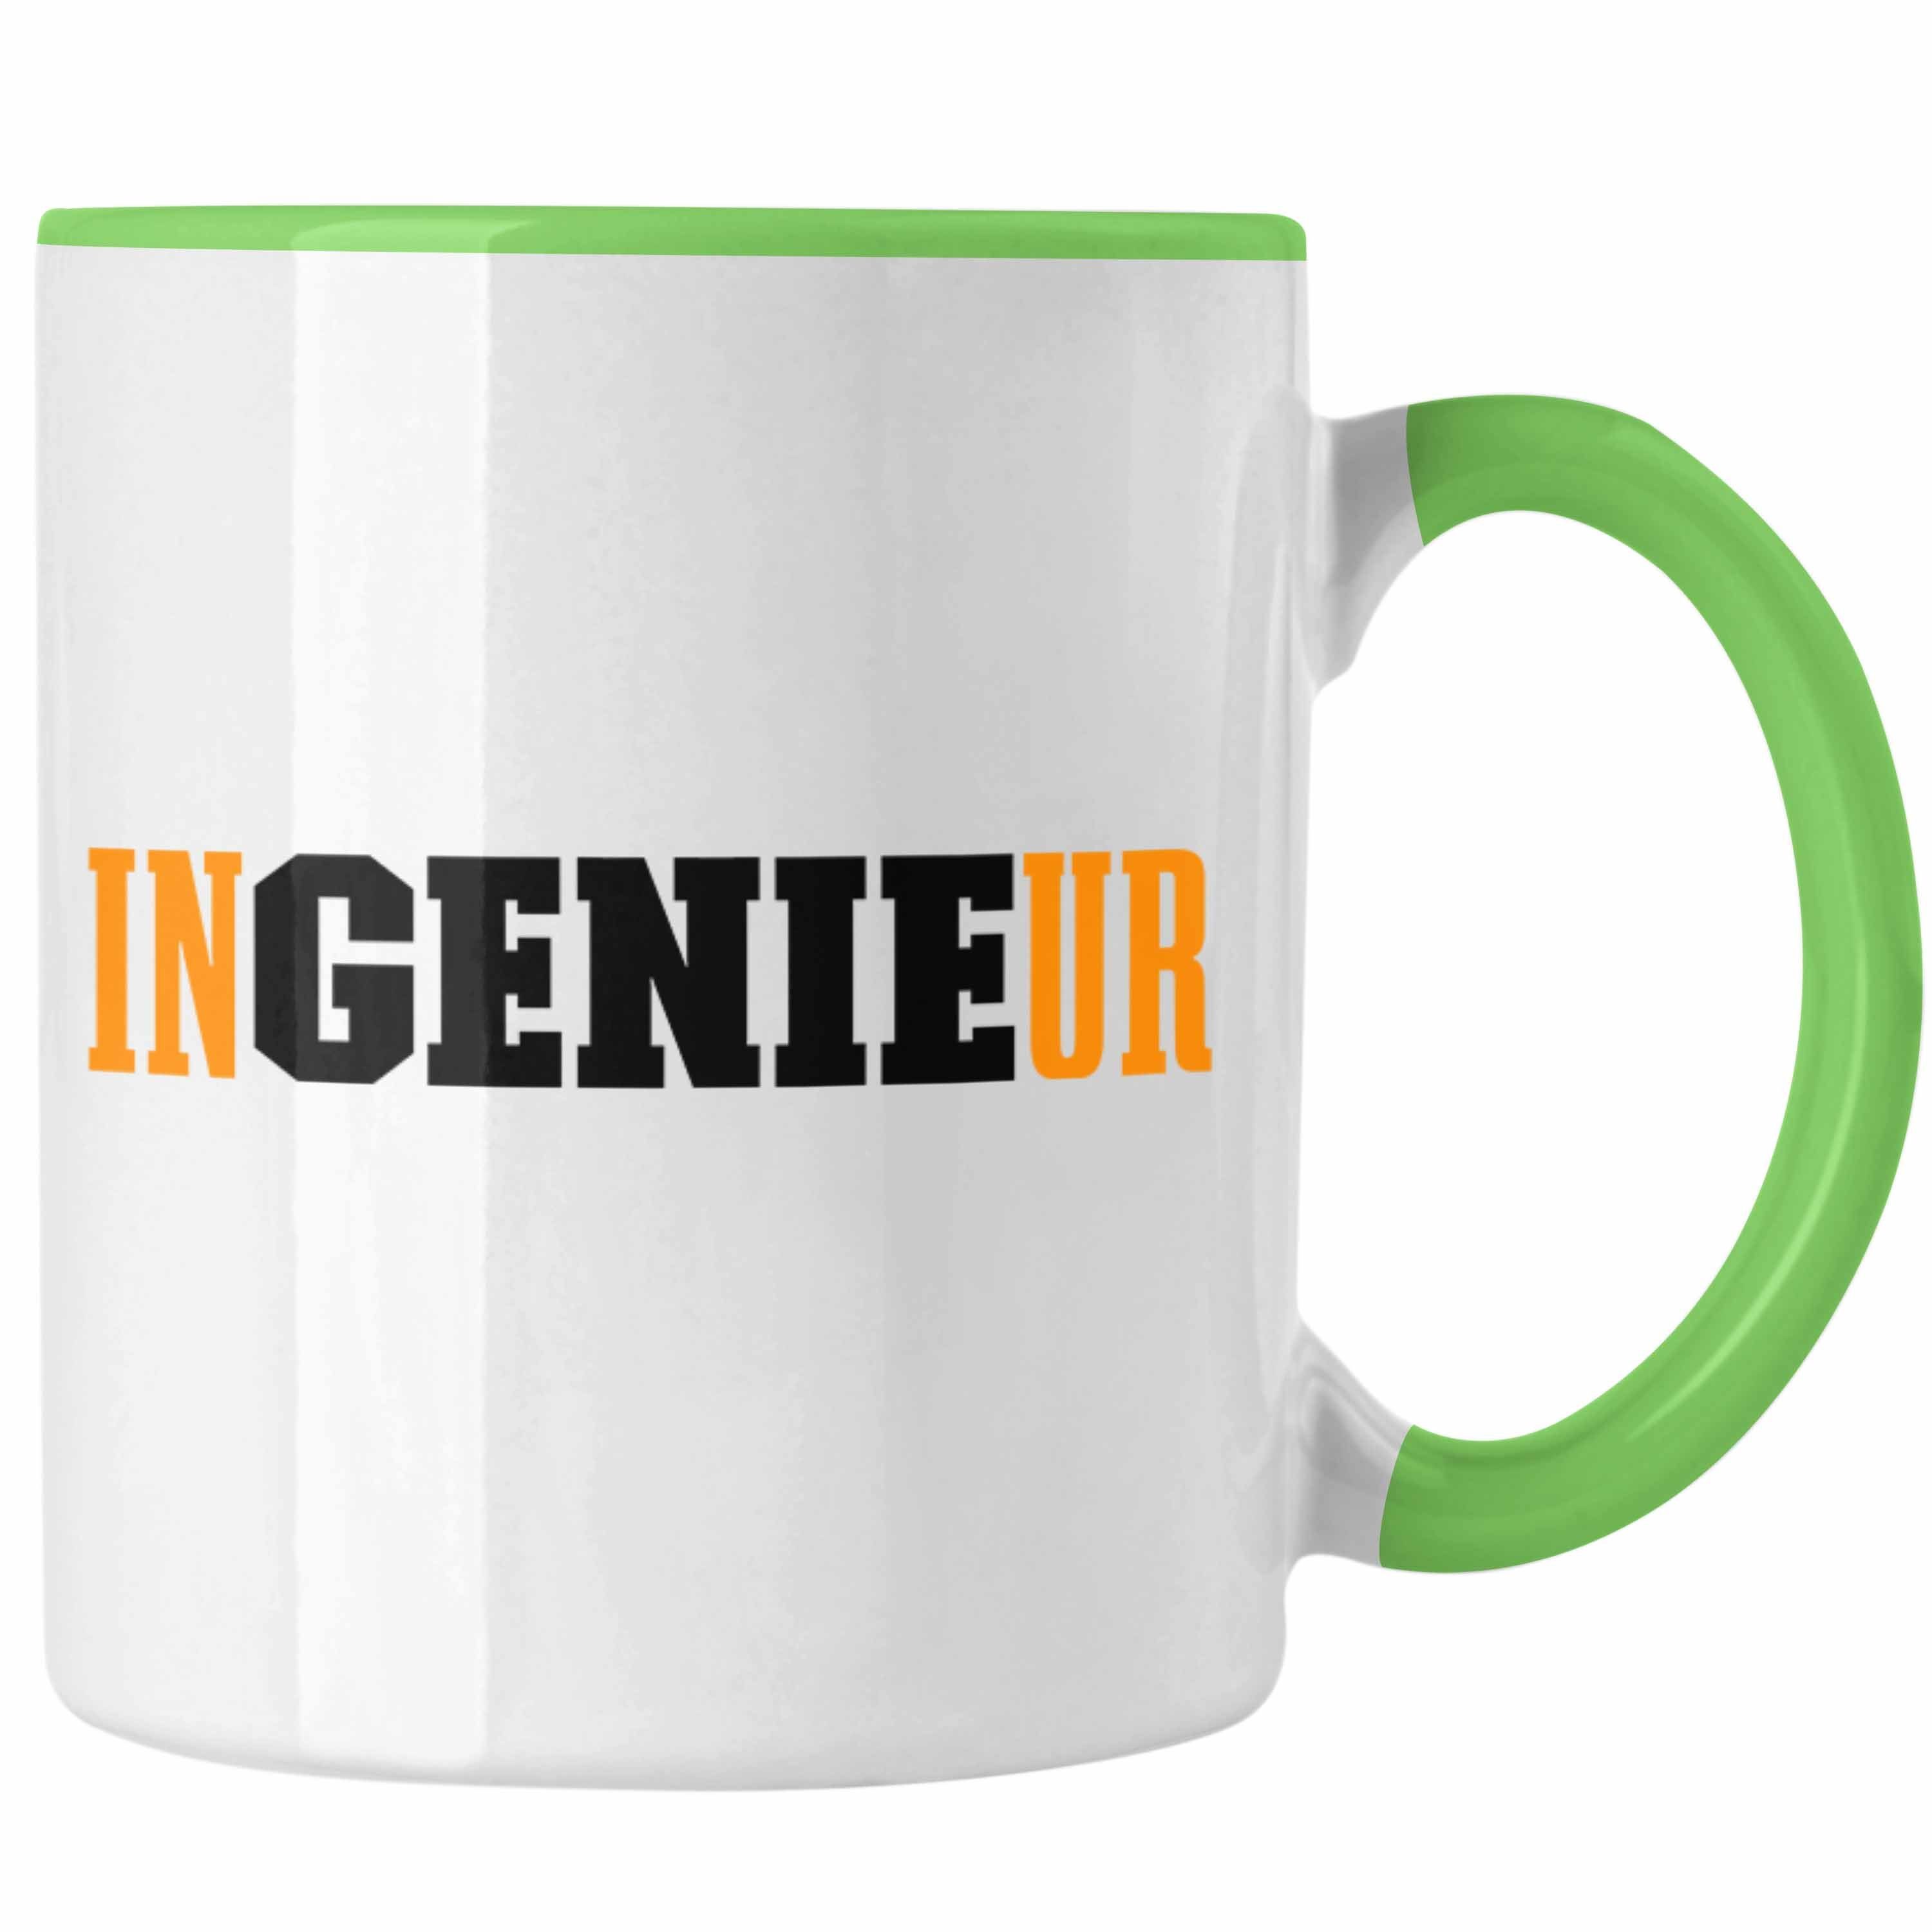 Geschenk Tasse Trendation Tasse - Geschenkidee Kaffeetasse Gadget Trendation Ingeneur Grün Ingenieur